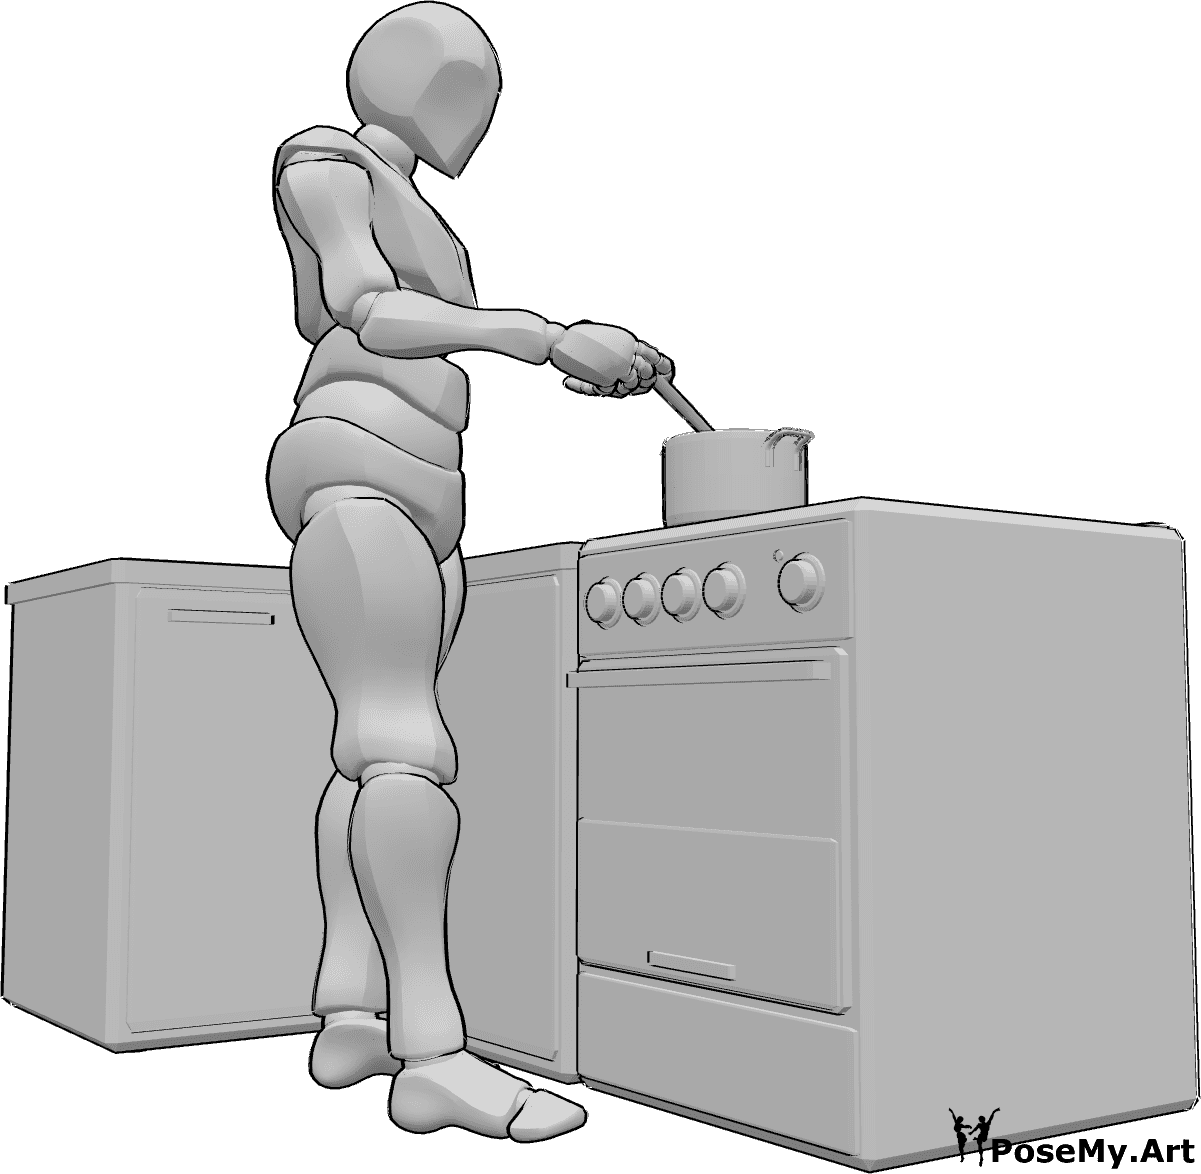 Referência de poses- Pose de cozinheiro masculino - Homem de pé, a cozinhar algo numa panela e a mexer com uma colher de pau